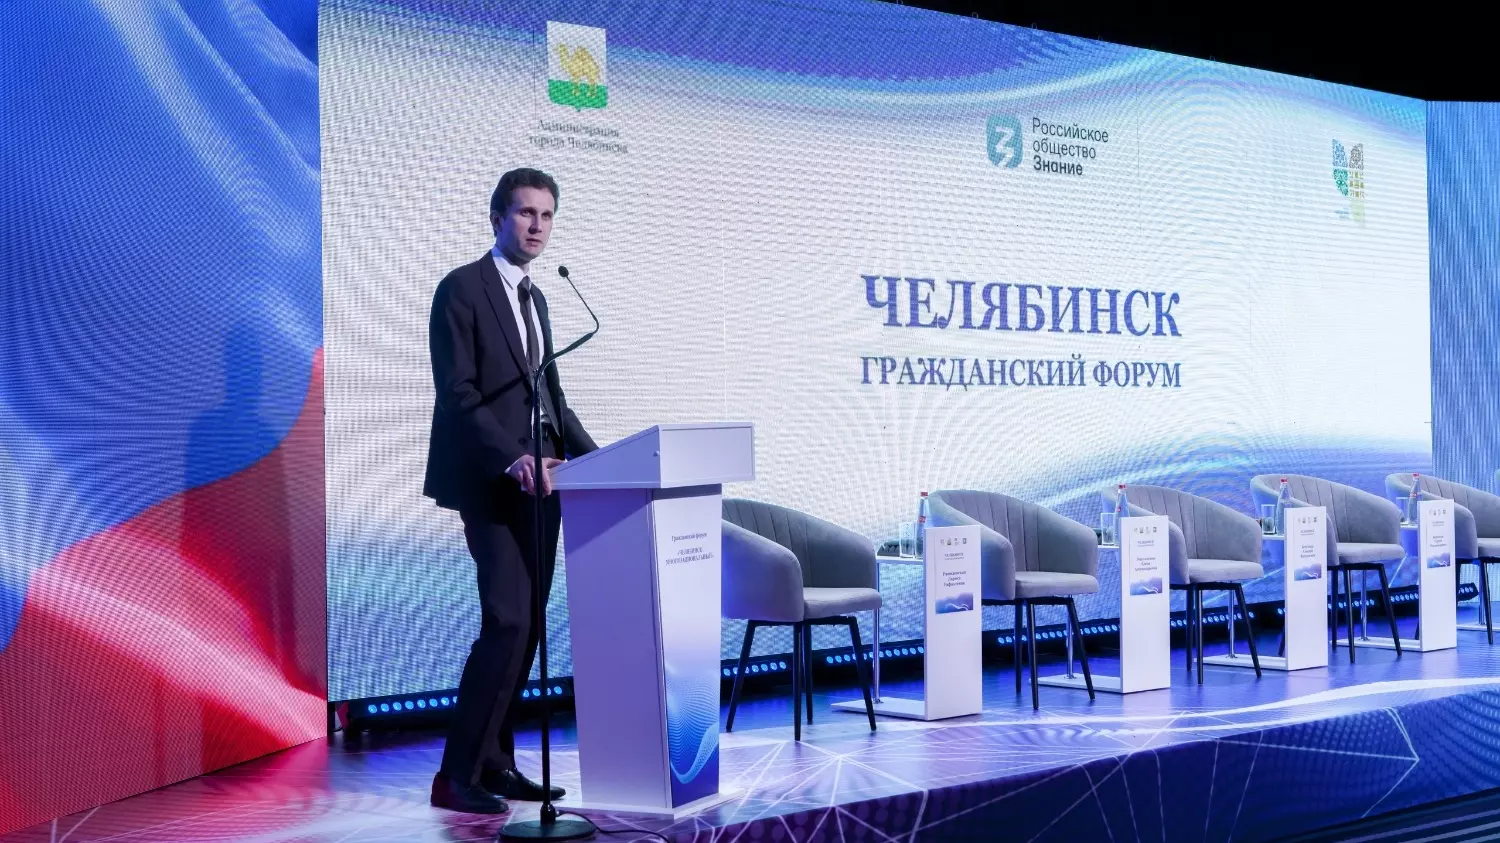 Дмитрий Сидоров, начальник управления общественных связей правительства Челябинской области